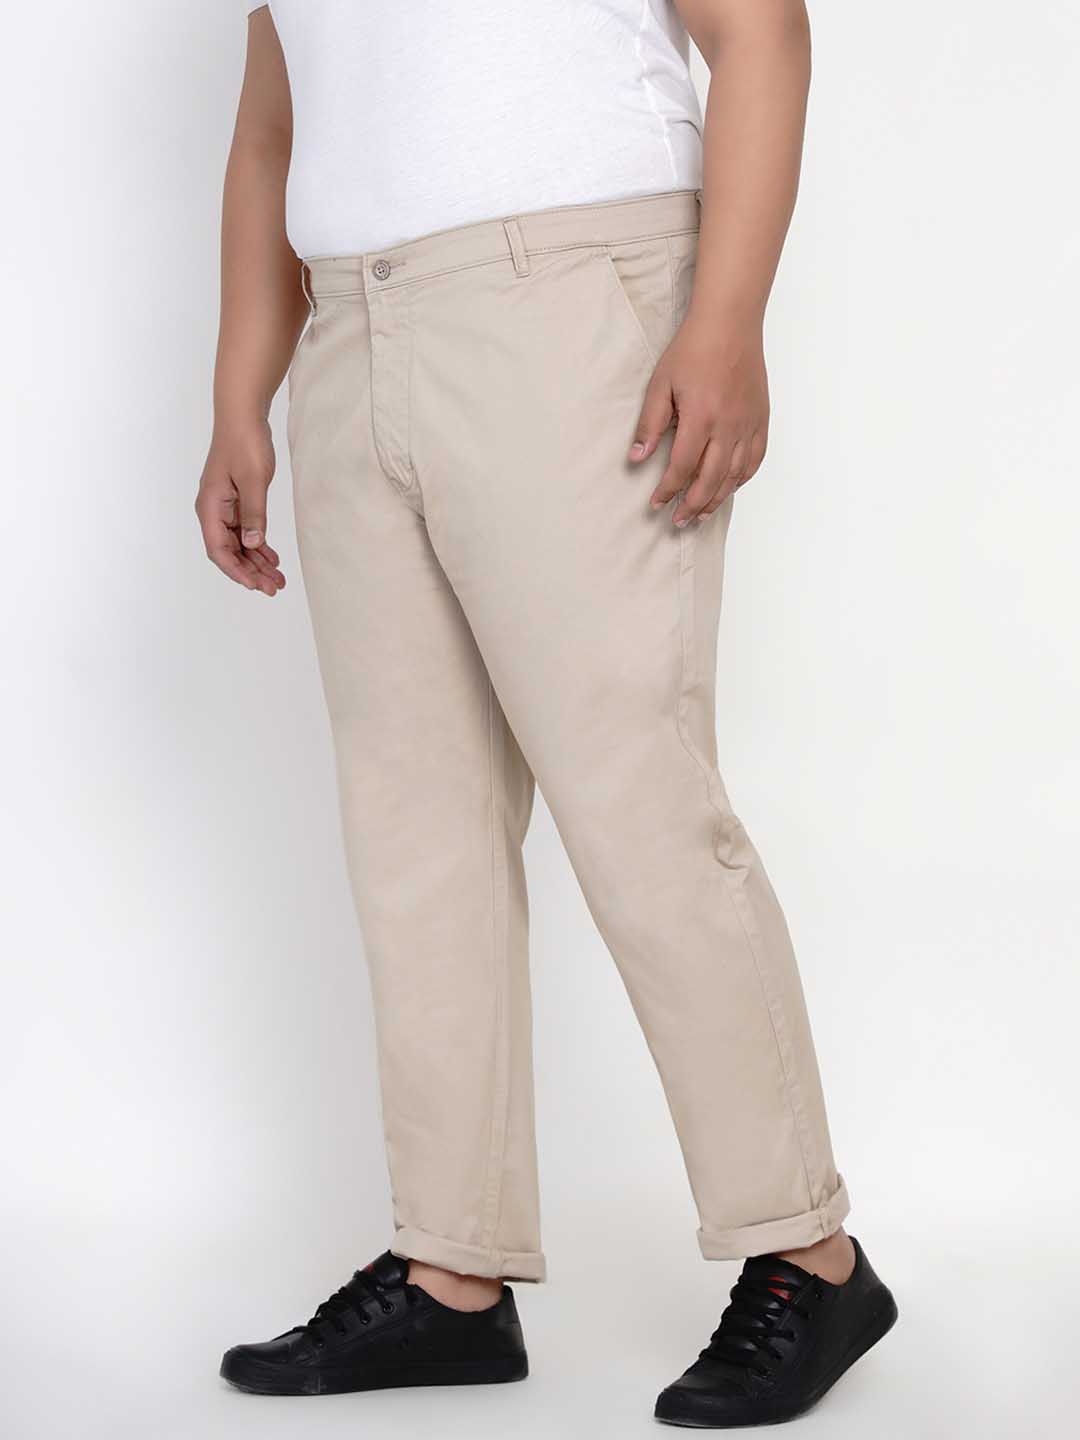 bottomwear/trousers/JPTR2195C/jptr2195c-3.jpg